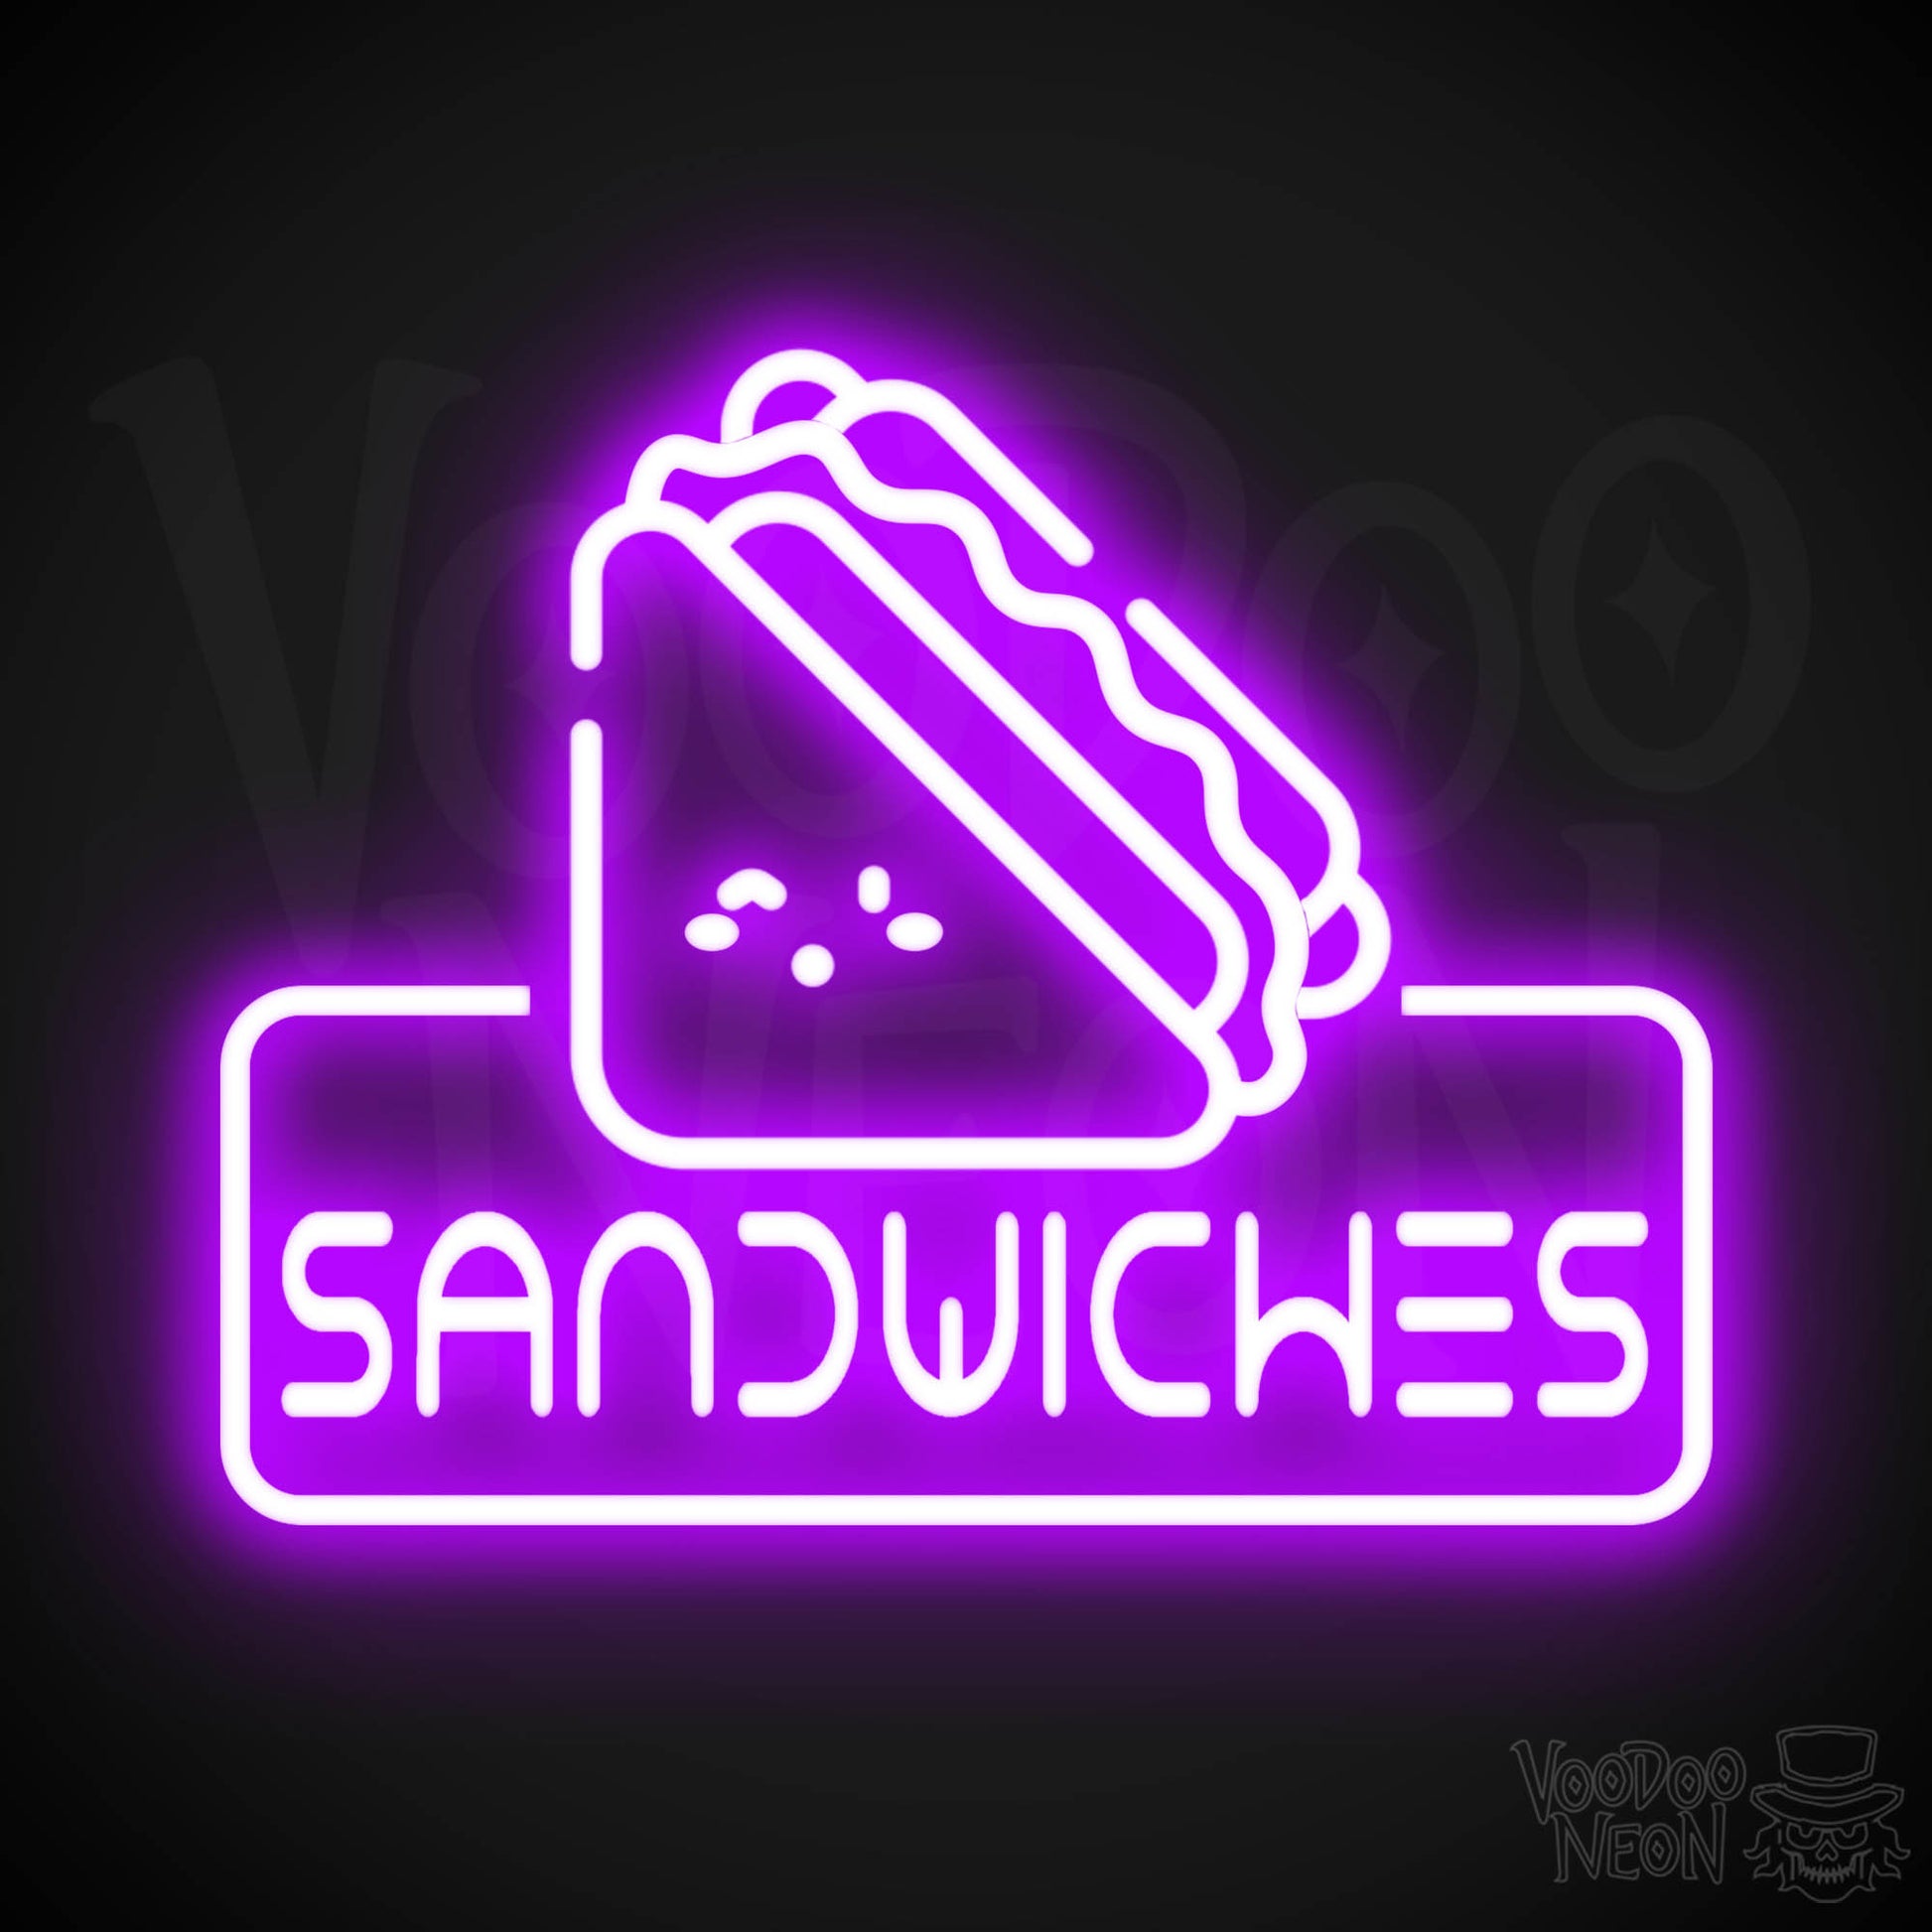 Neon Sandwiches Sign - Sandwich Neon Sign - Neon Sandwich Shop Sign - Color Purple